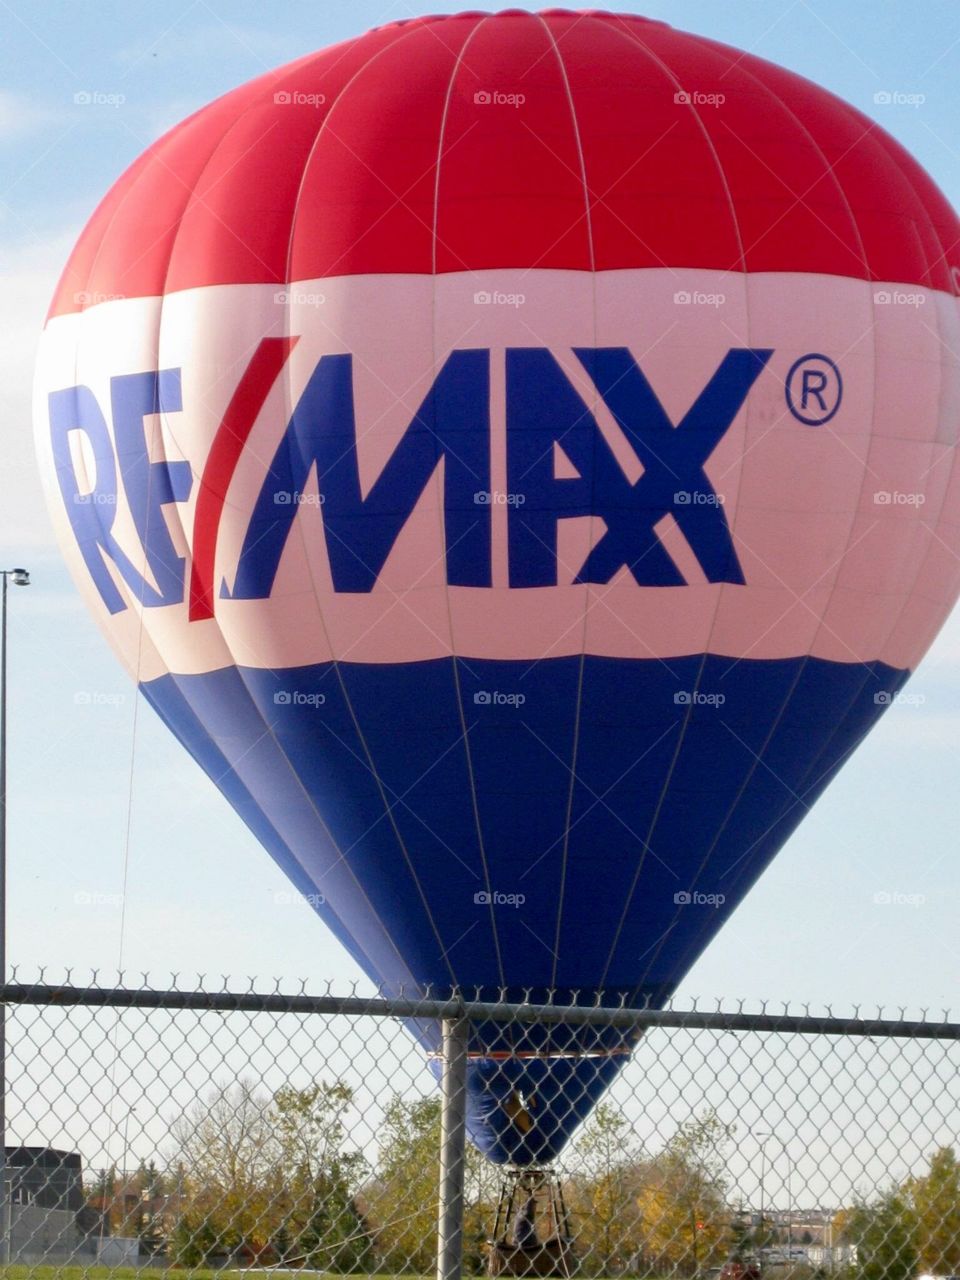 Remax hot air balloon